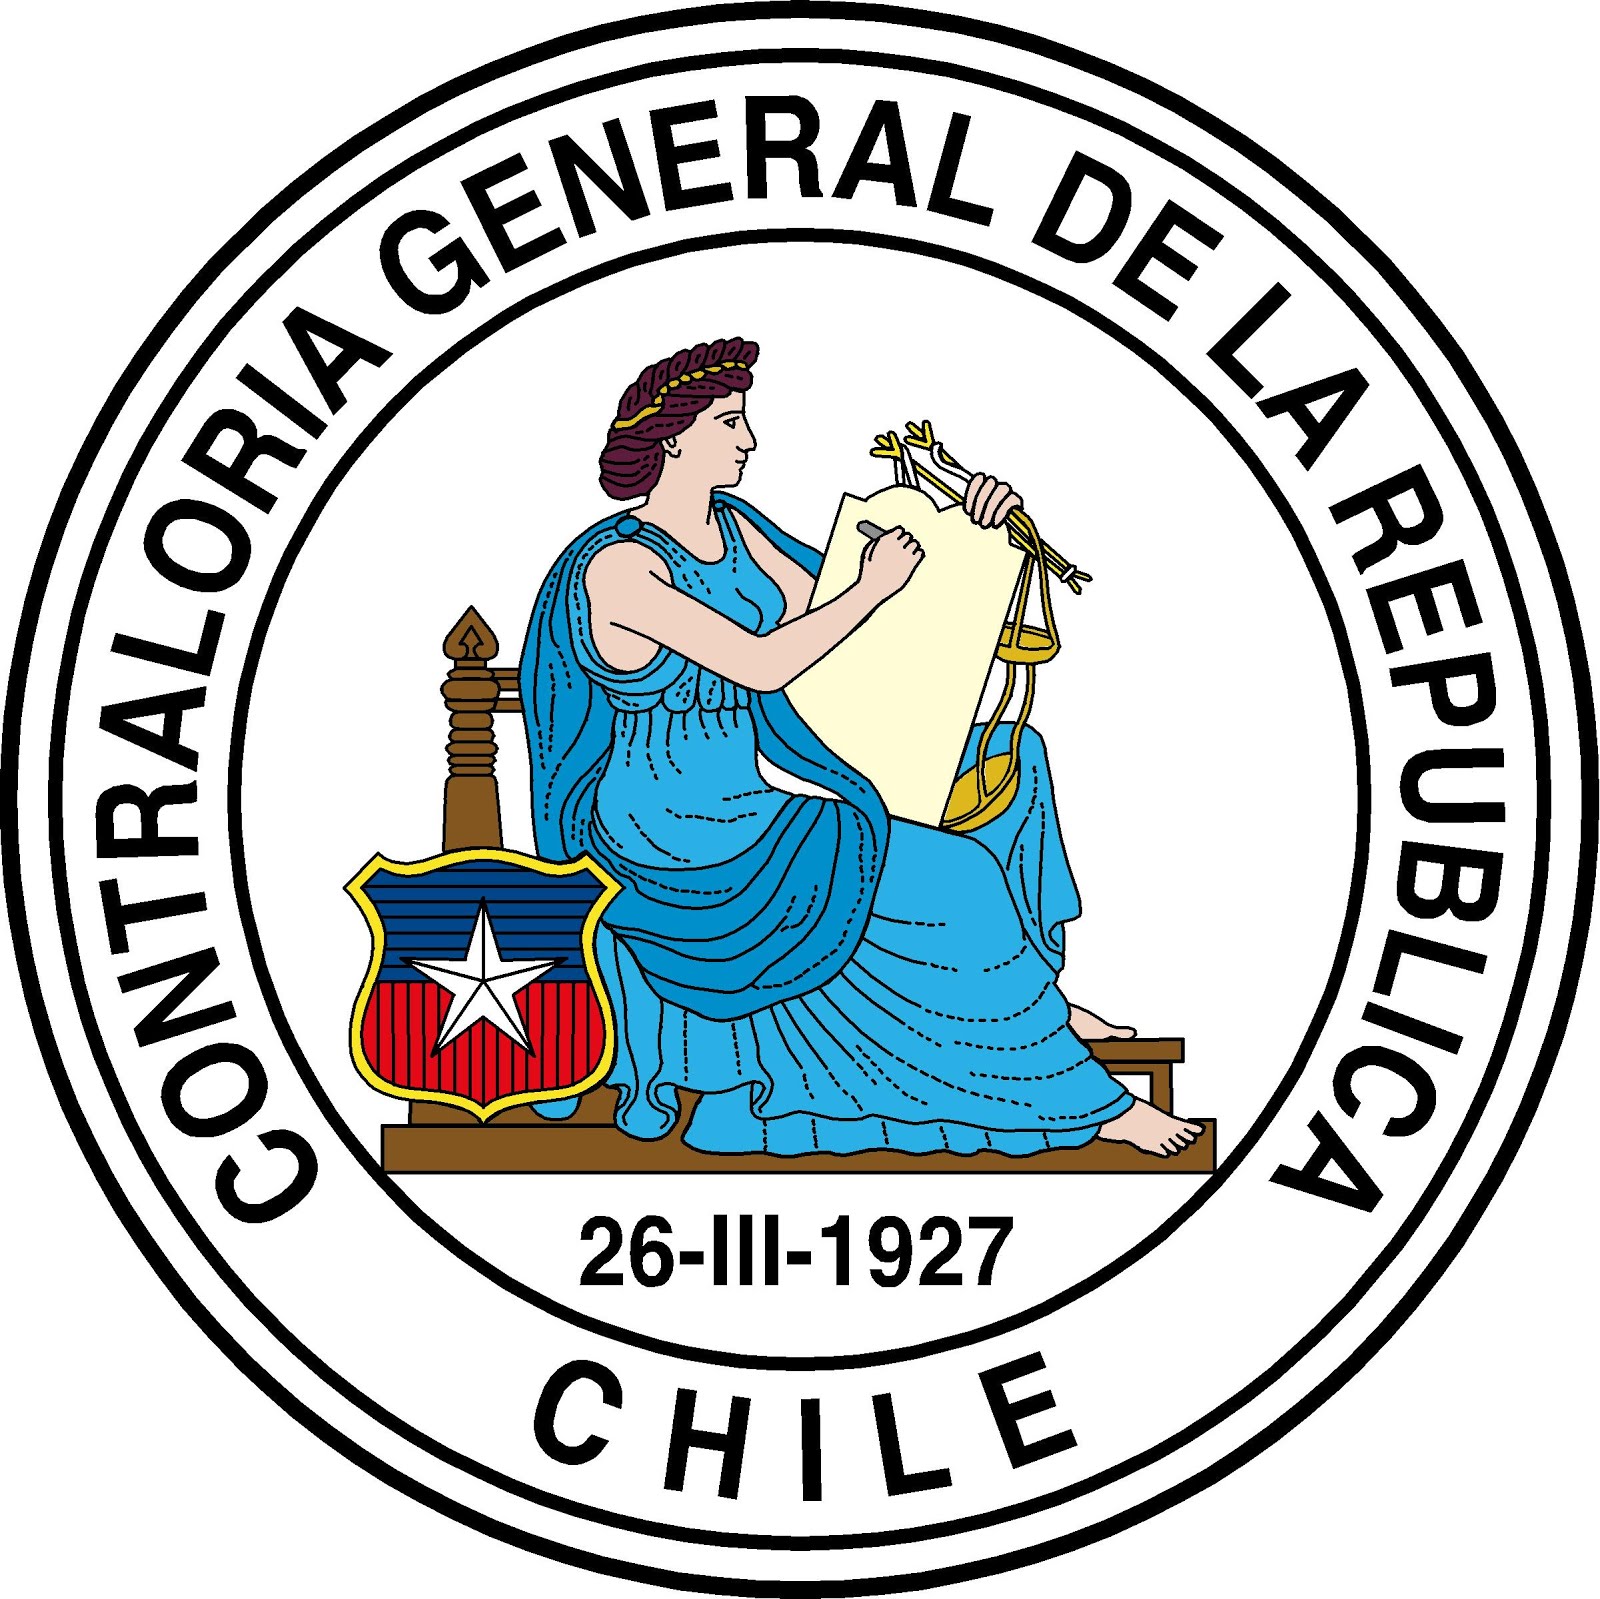 Contraloria General de la República de Chile